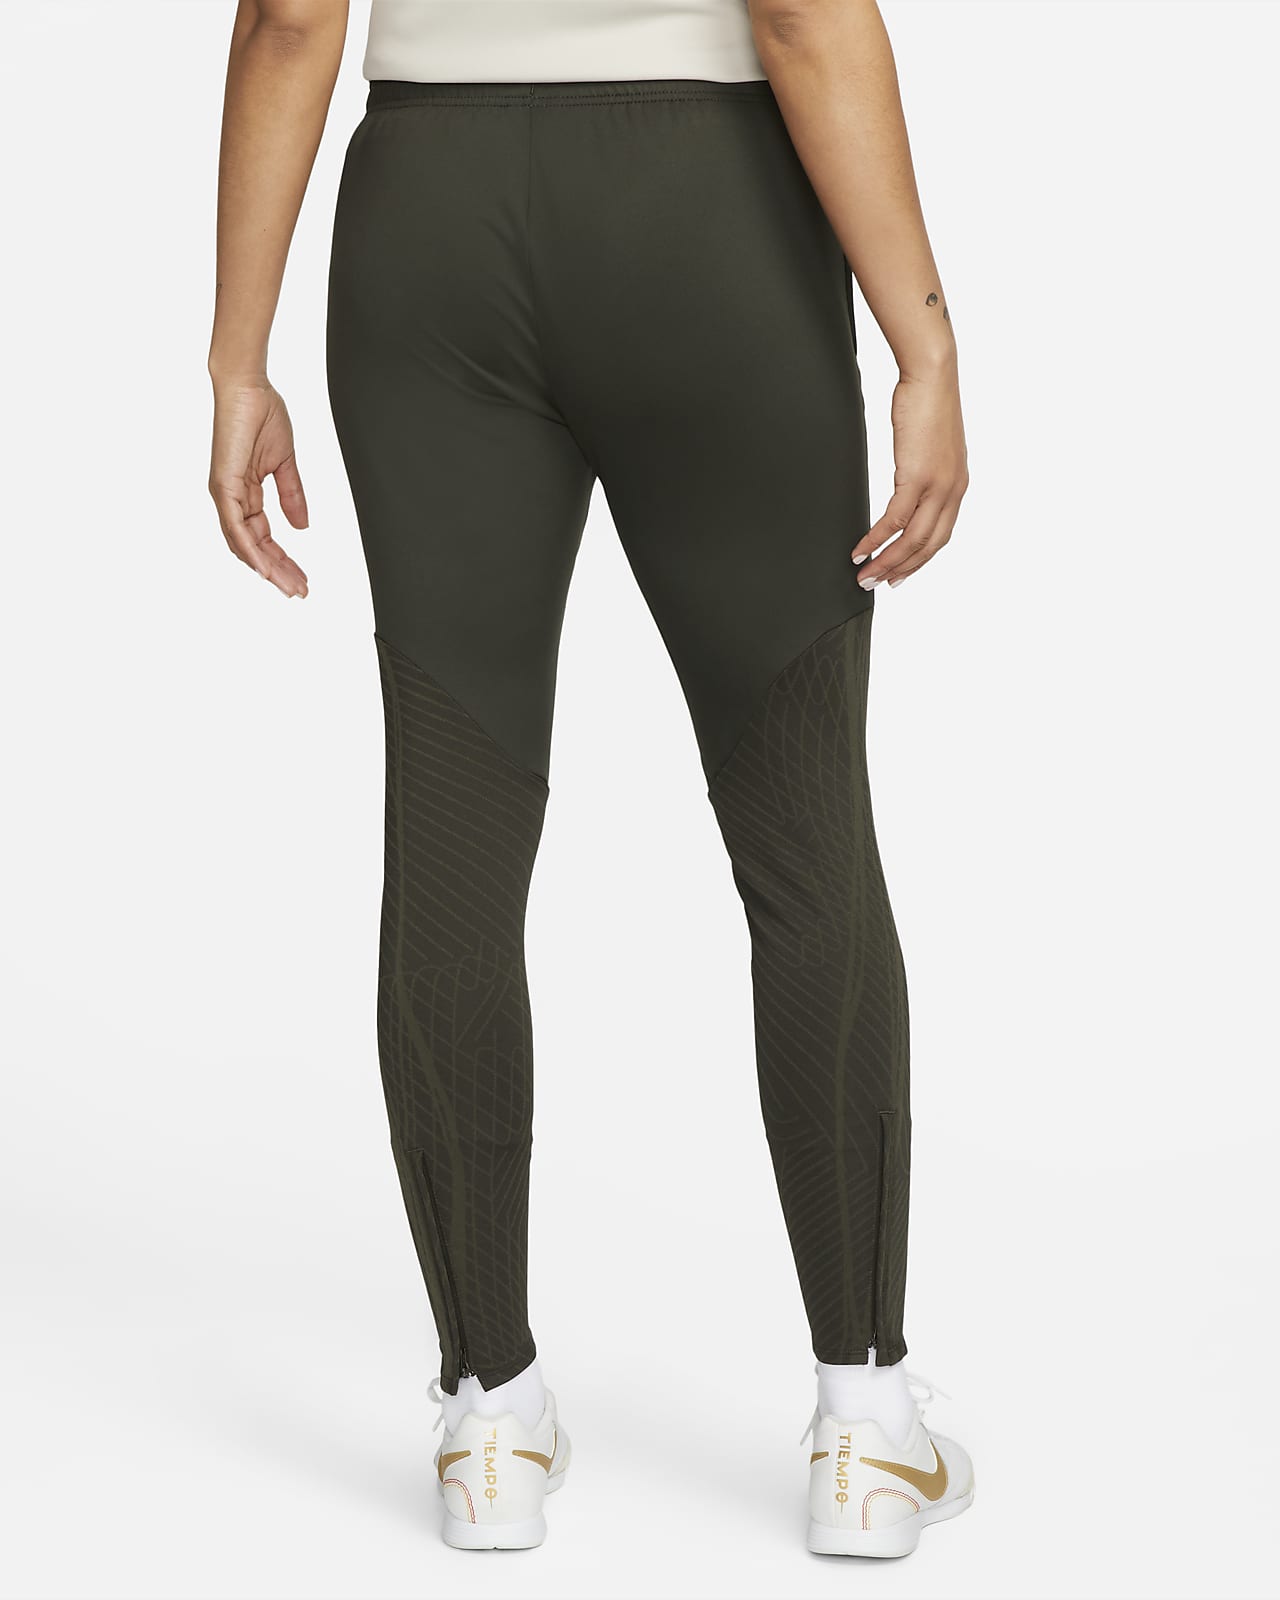 Femmes Nike Pro Pantalons et collants. Nike CA